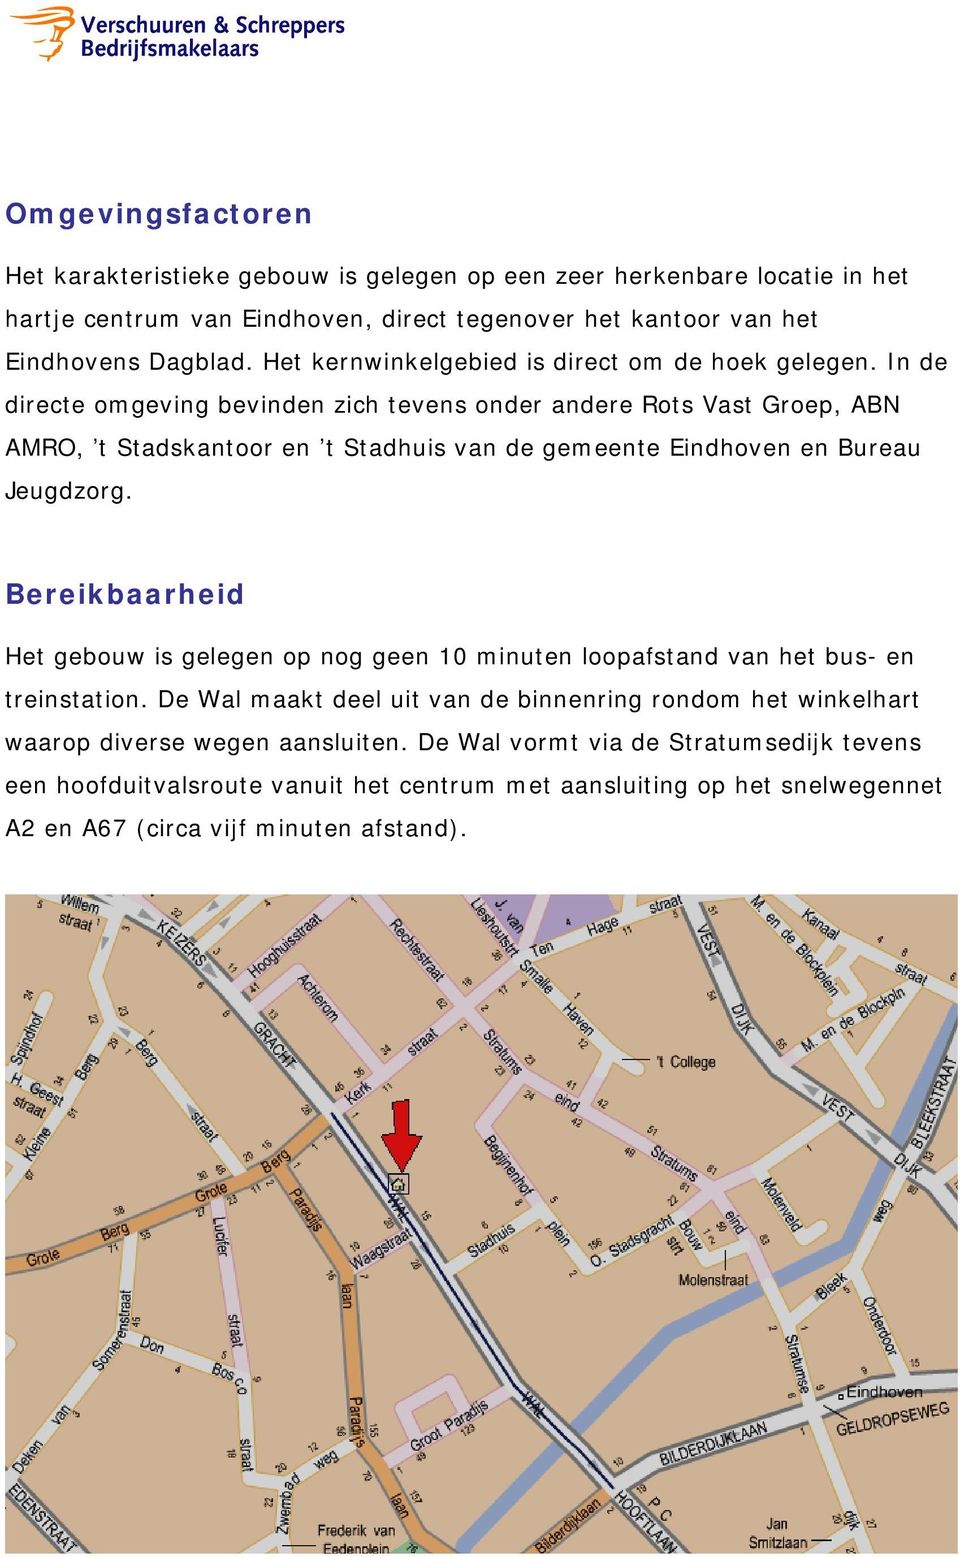 In de directe omgeving bevinden zich tevens onder andere Rots Vast Groep, ABN AMRO, t Stadskantoor en t Stadhuis van de gemeente Eindhoven en Bureau Jeugdzorg.